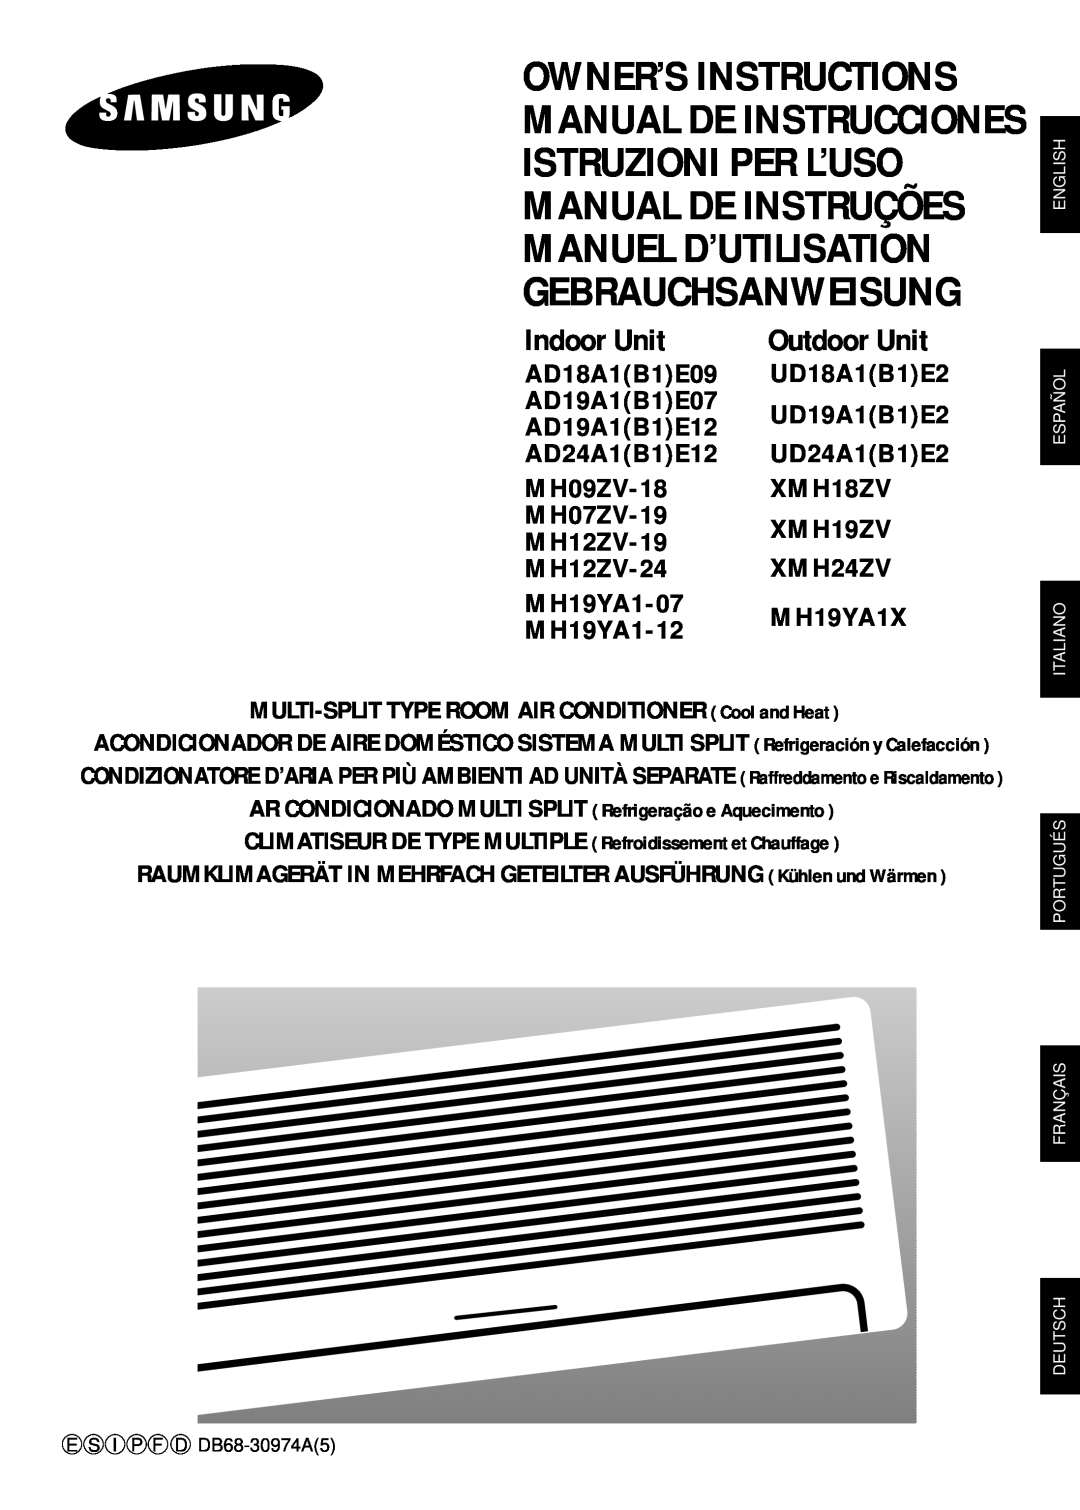 Samsung MH09ZV-18 manuel dutilisation Manual De Instrucciones Istruzioni Per L’Uso, Manuel D’Utilisation, Indoor Unit 